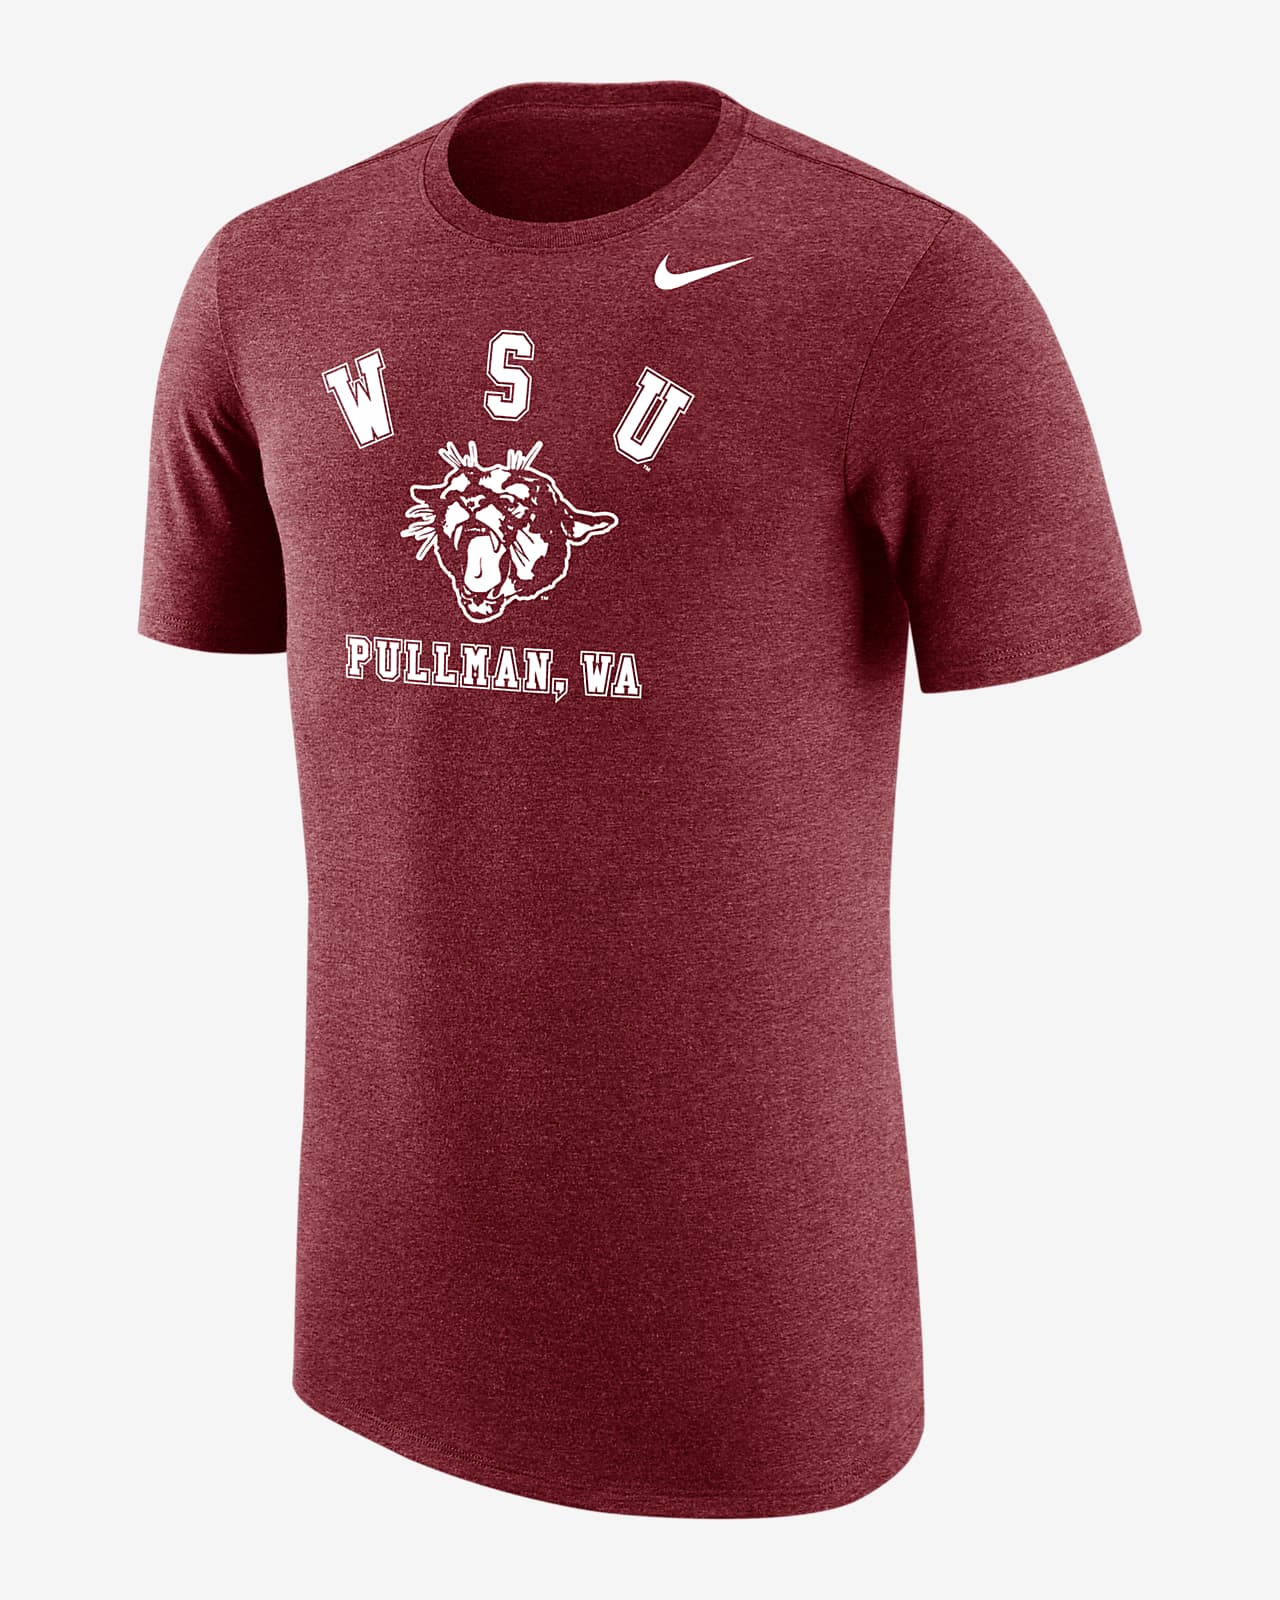 Washington State Men's Nike College T-Shirt